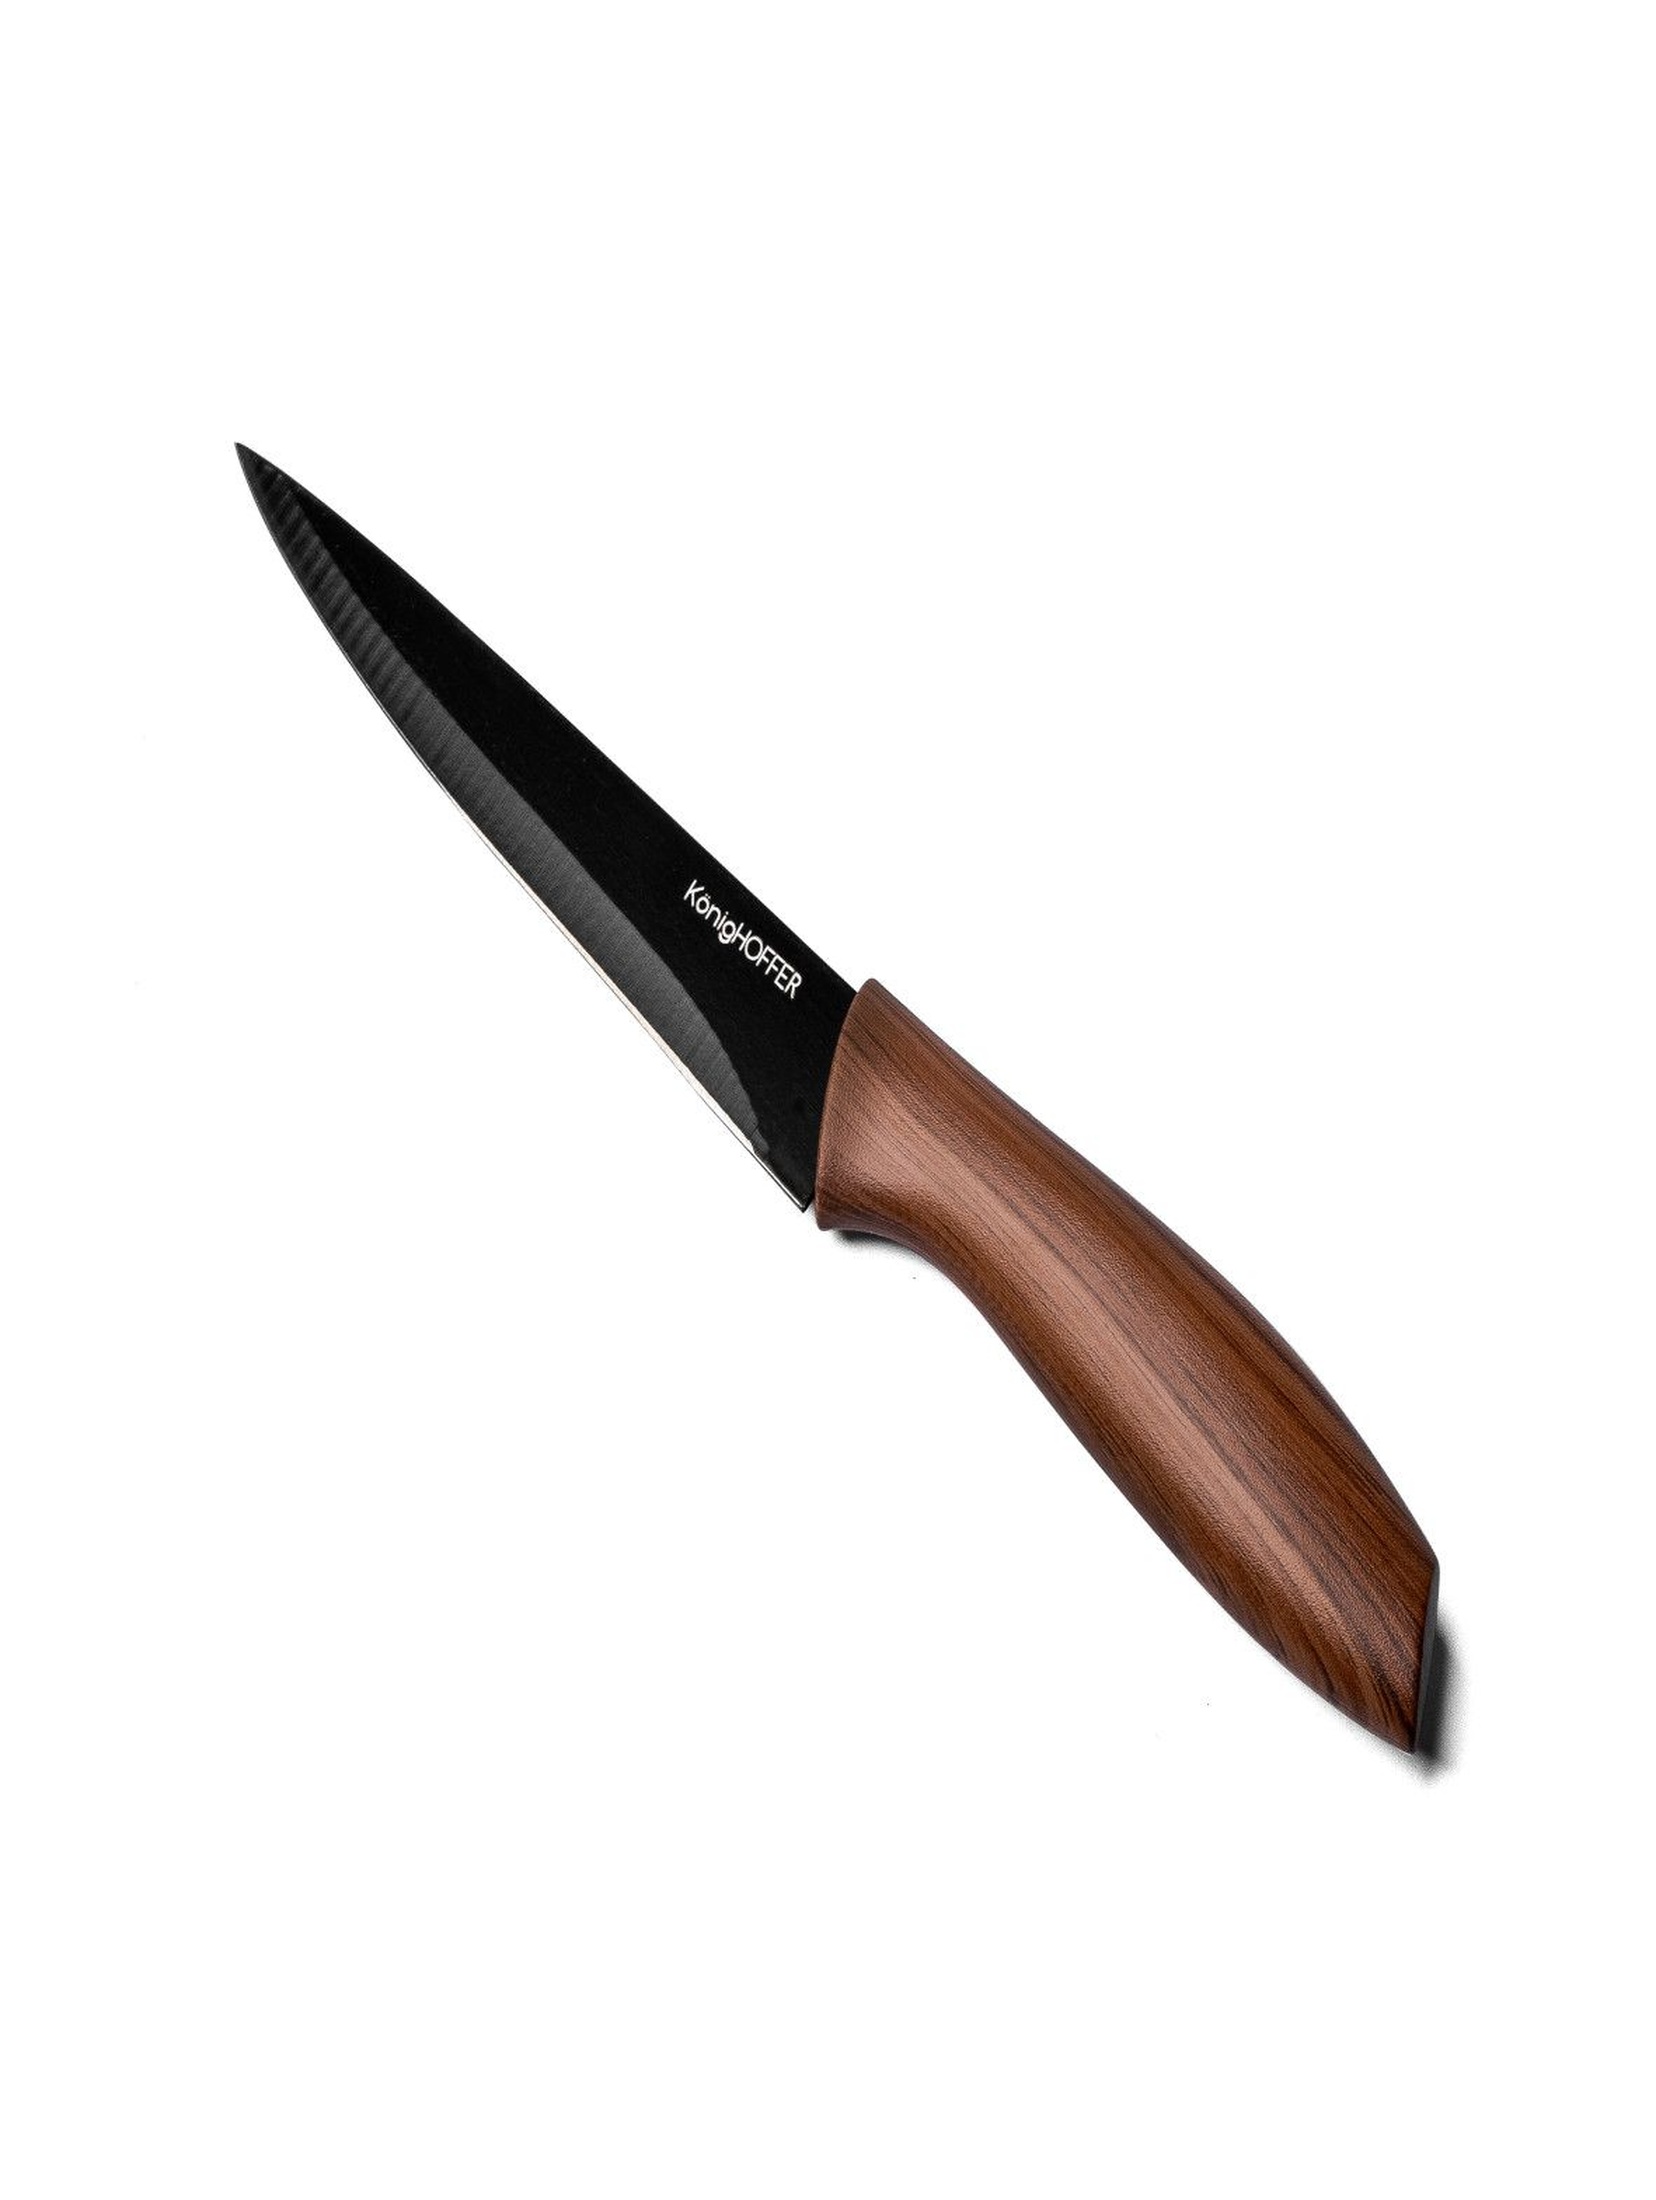 Nóż uniwersalny w kolorze czarnym  13 cm